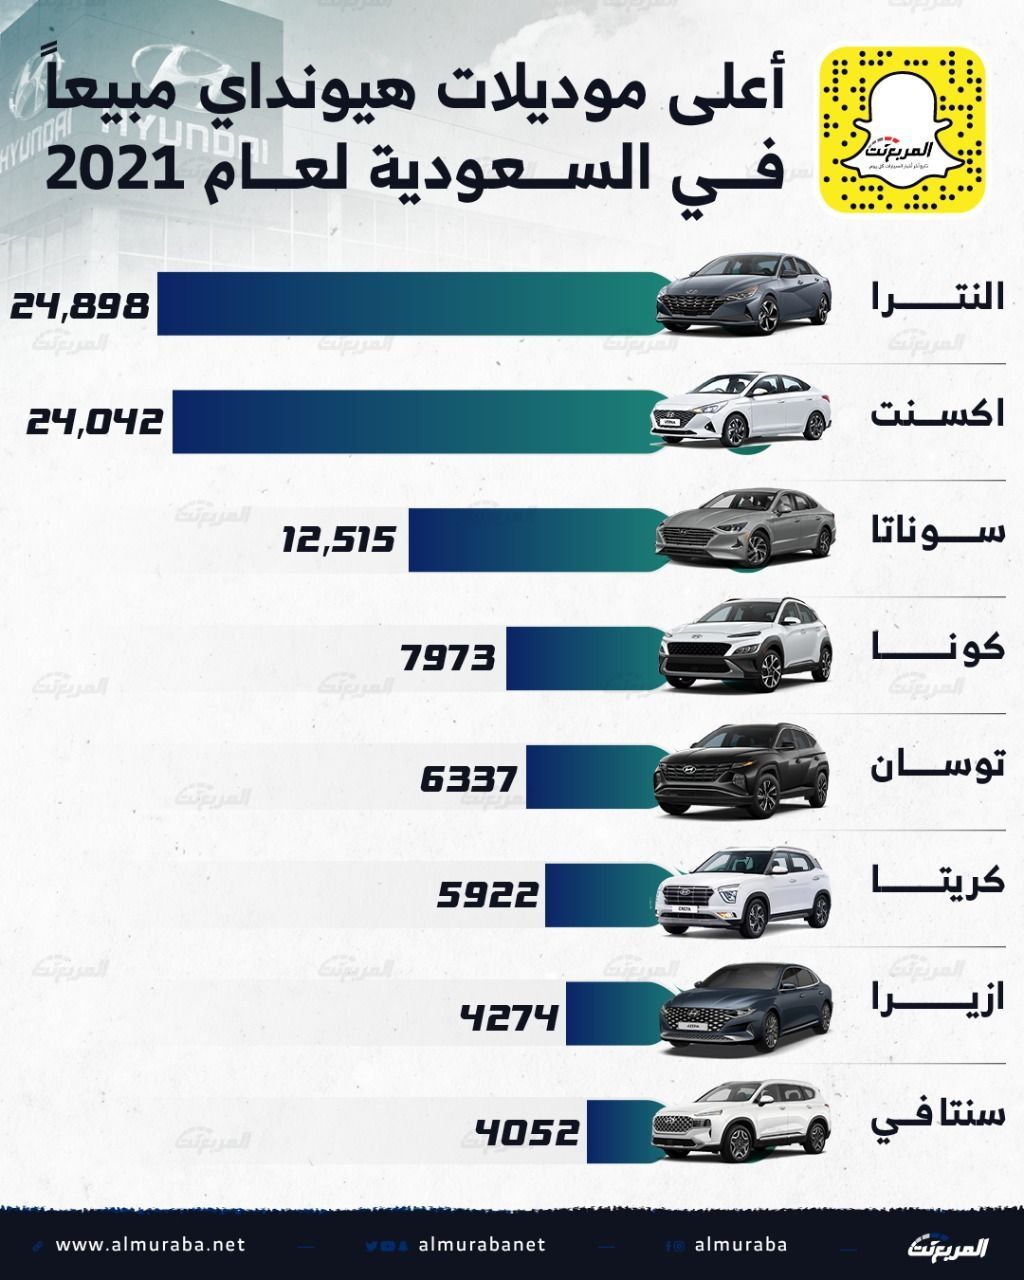 تعرف على أعلى موديلات هيونداي مبيعًا في السعودية في عام 2021